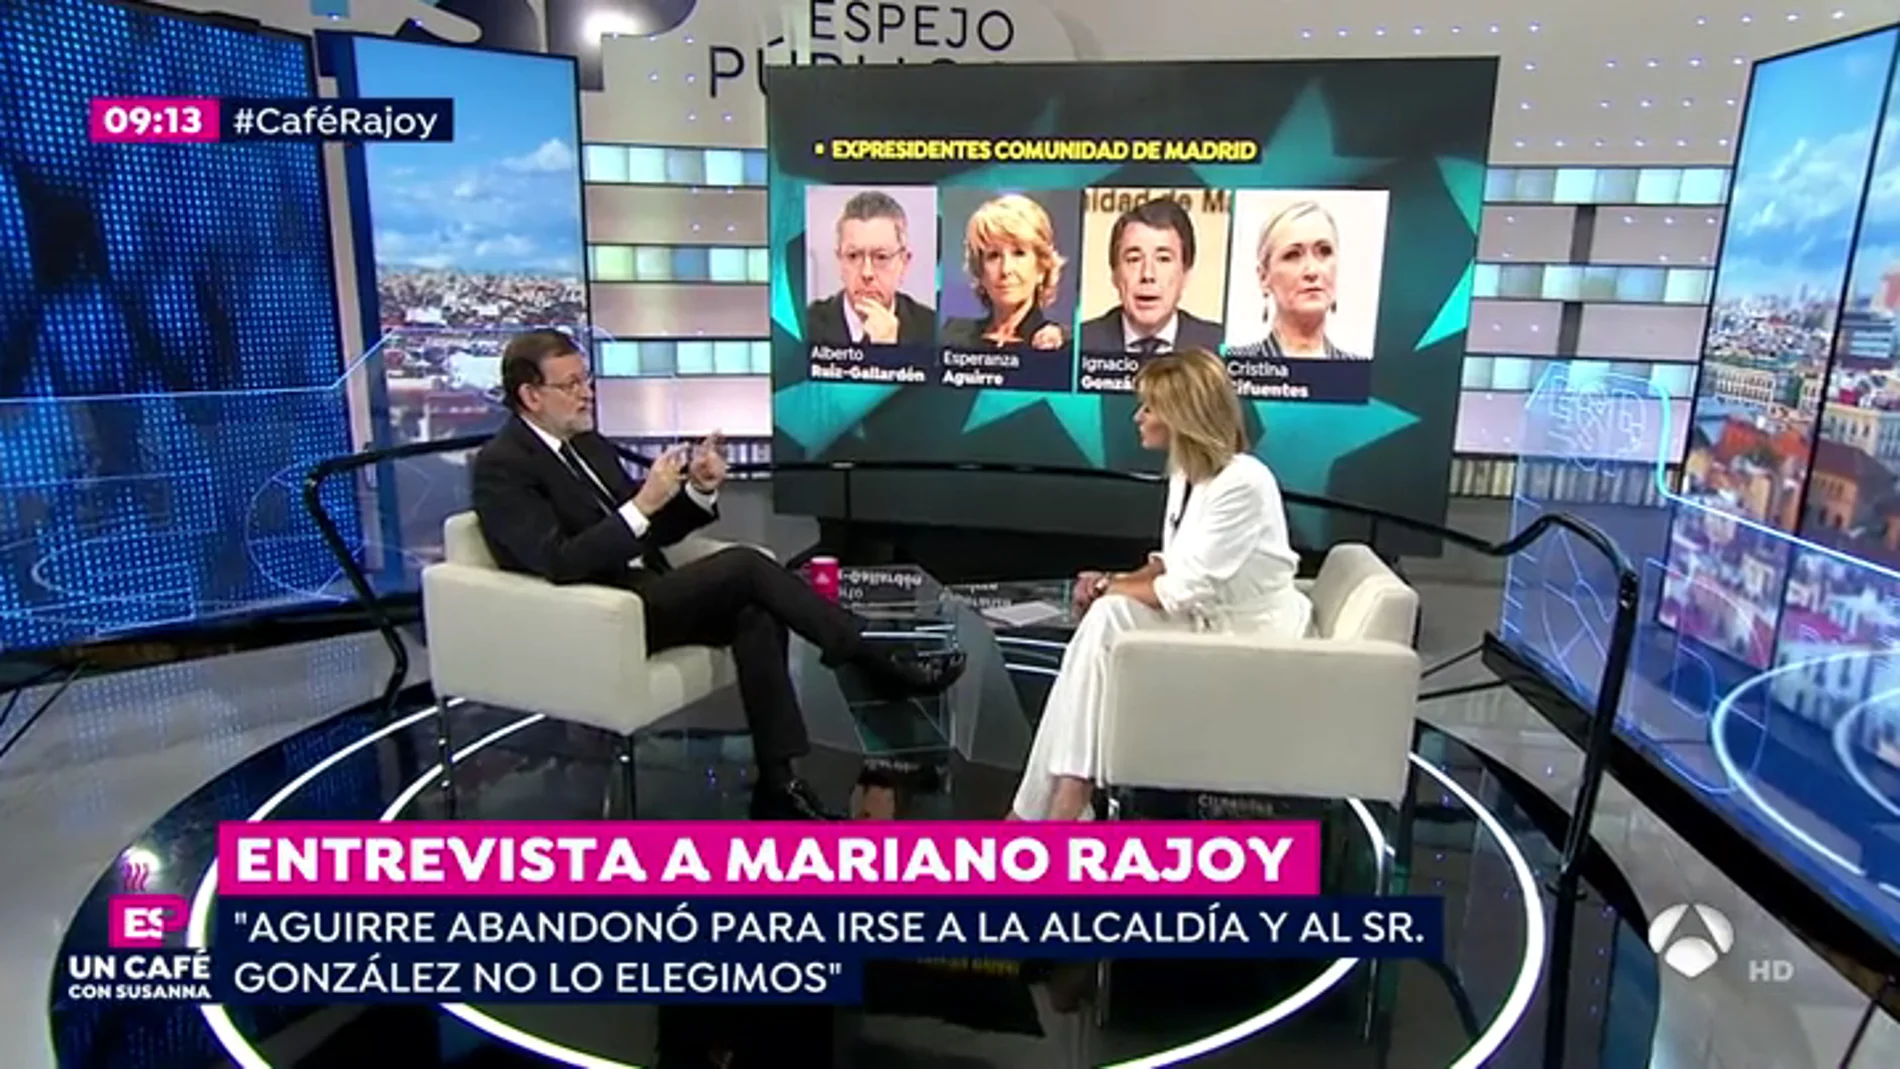 Rajoy, sobre el enfrentamiento con Ciudadanos por el 155: "Estoy convencido de que PP, PSOE y C's seguiremos yendo juntos"